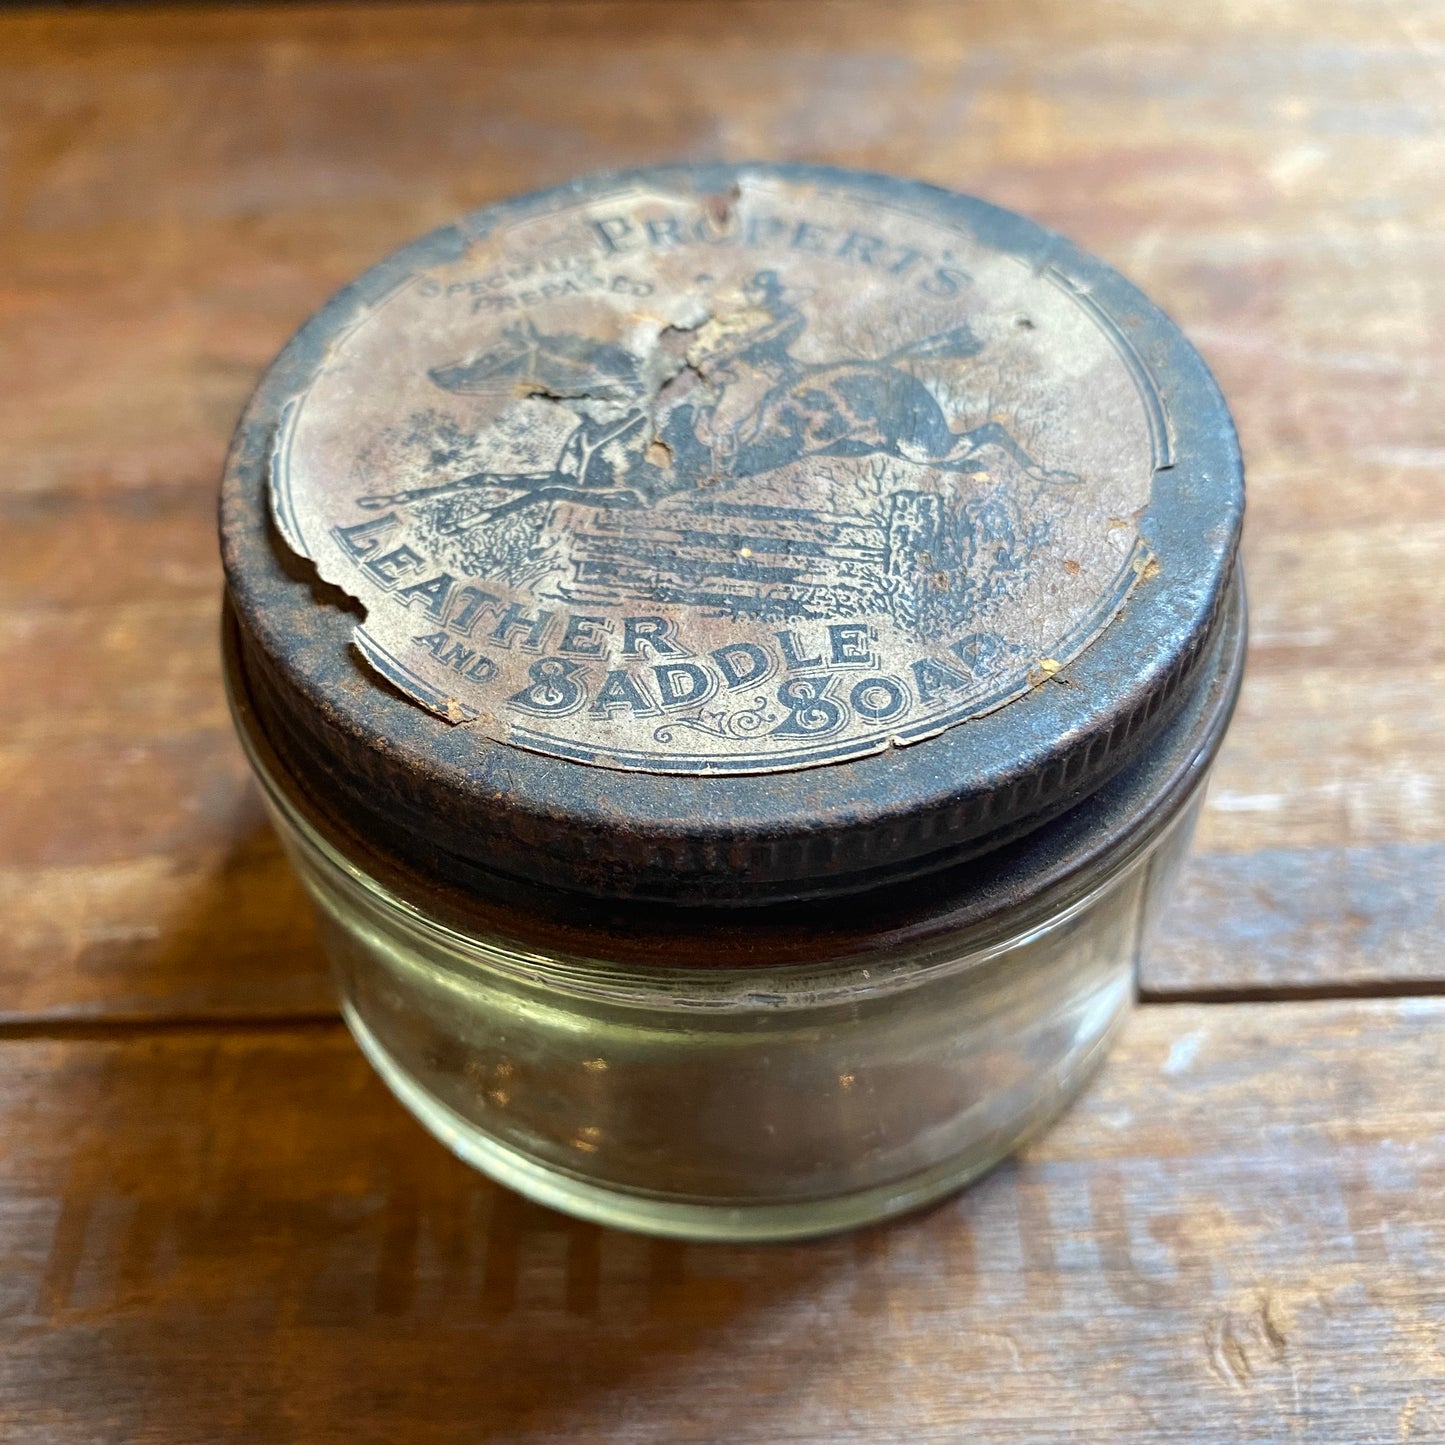 【England vintage】PROPERT'S SADDLE SOAP 瓶